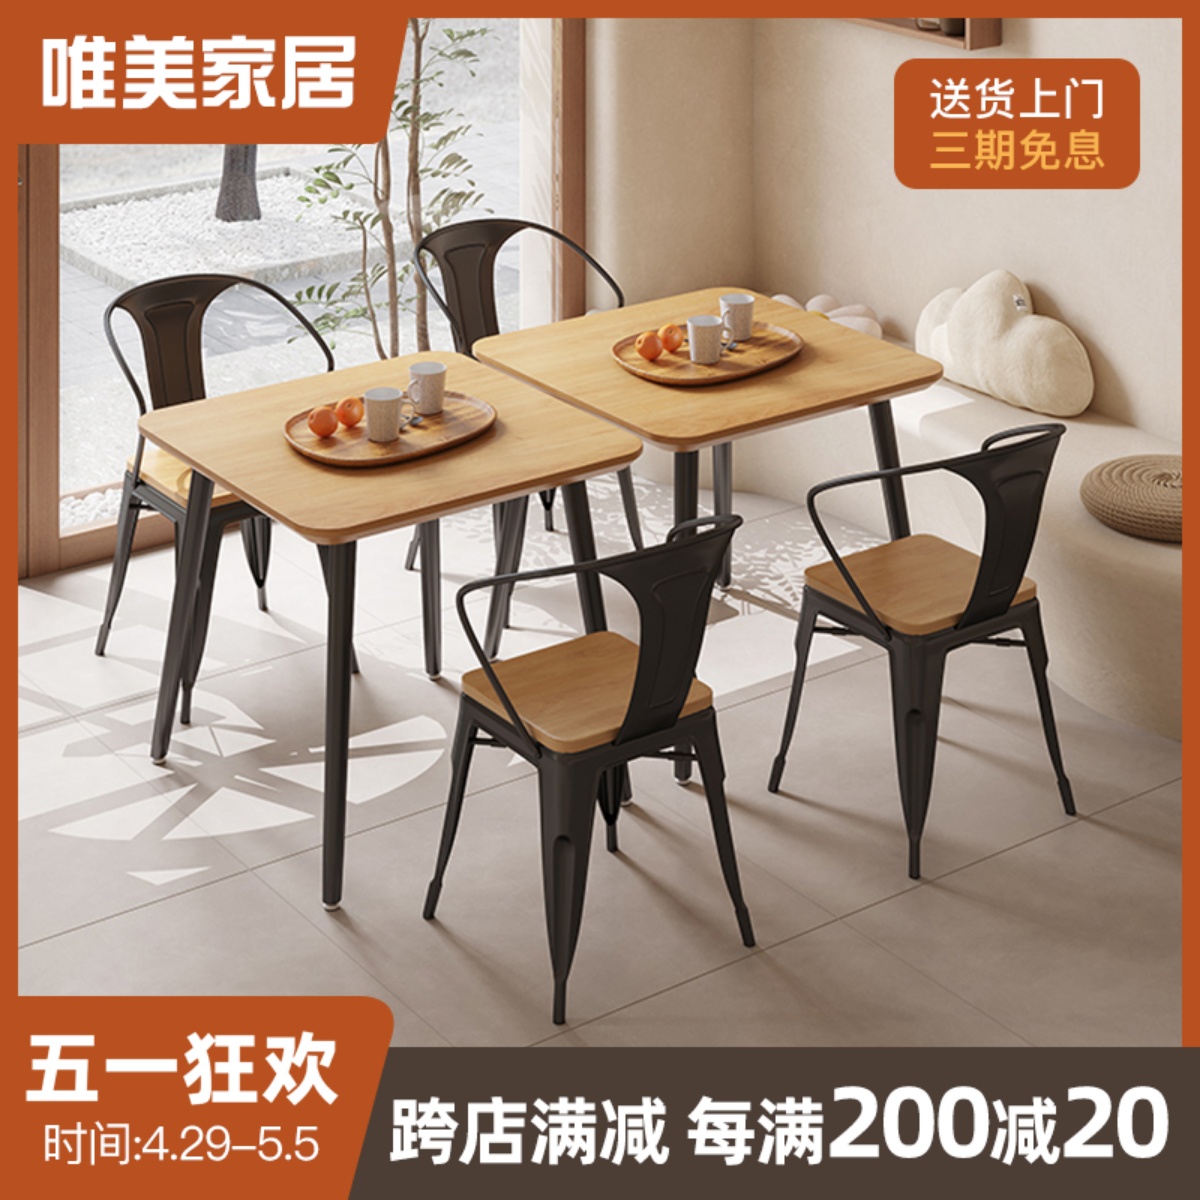 面馆餐厅快餐店饭店休闲商用实木歺餐桌椅组合正方形小方桌子1073